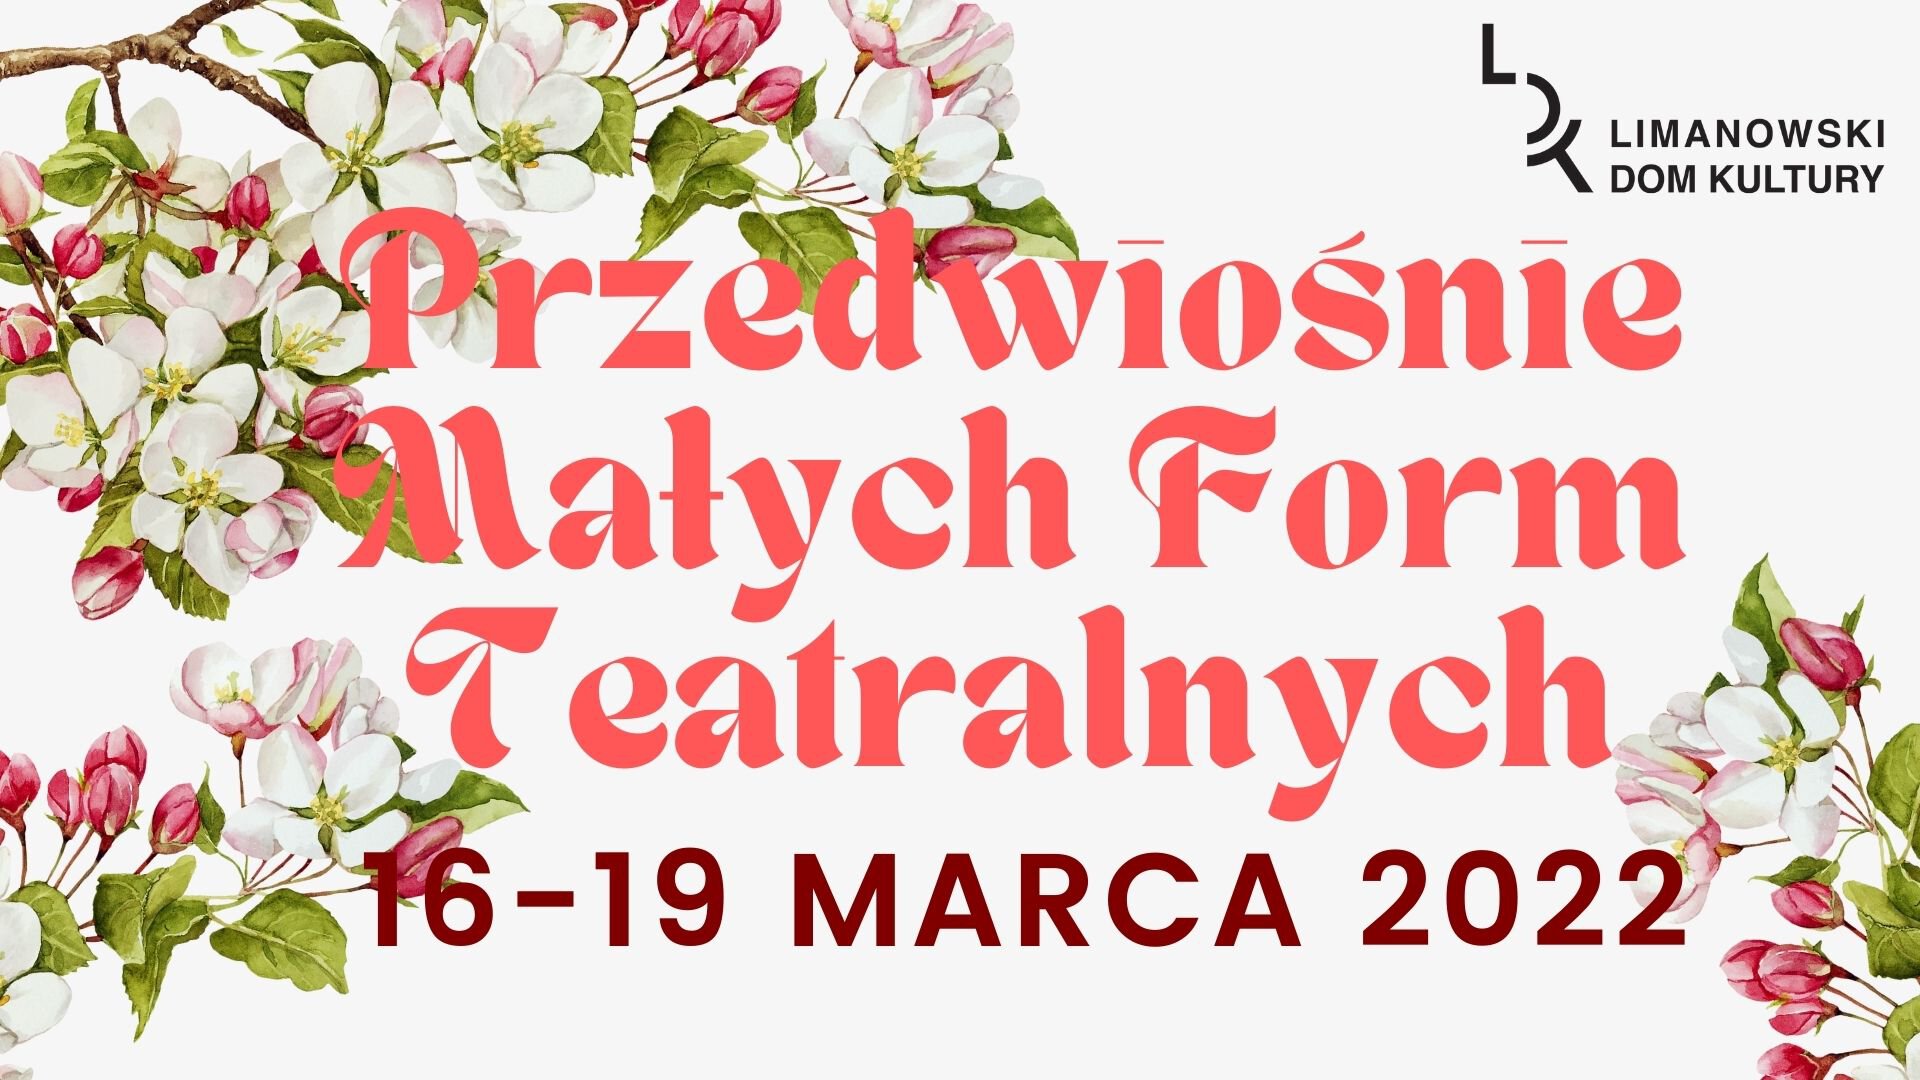 Plakat informujący Przedwiosnie Malych Form Teatralnych 16 -19 Marca 2022 Limanowski Dom Kultury. Na jasnym tle rysunek przedstawiający gałęzie jabłoni.